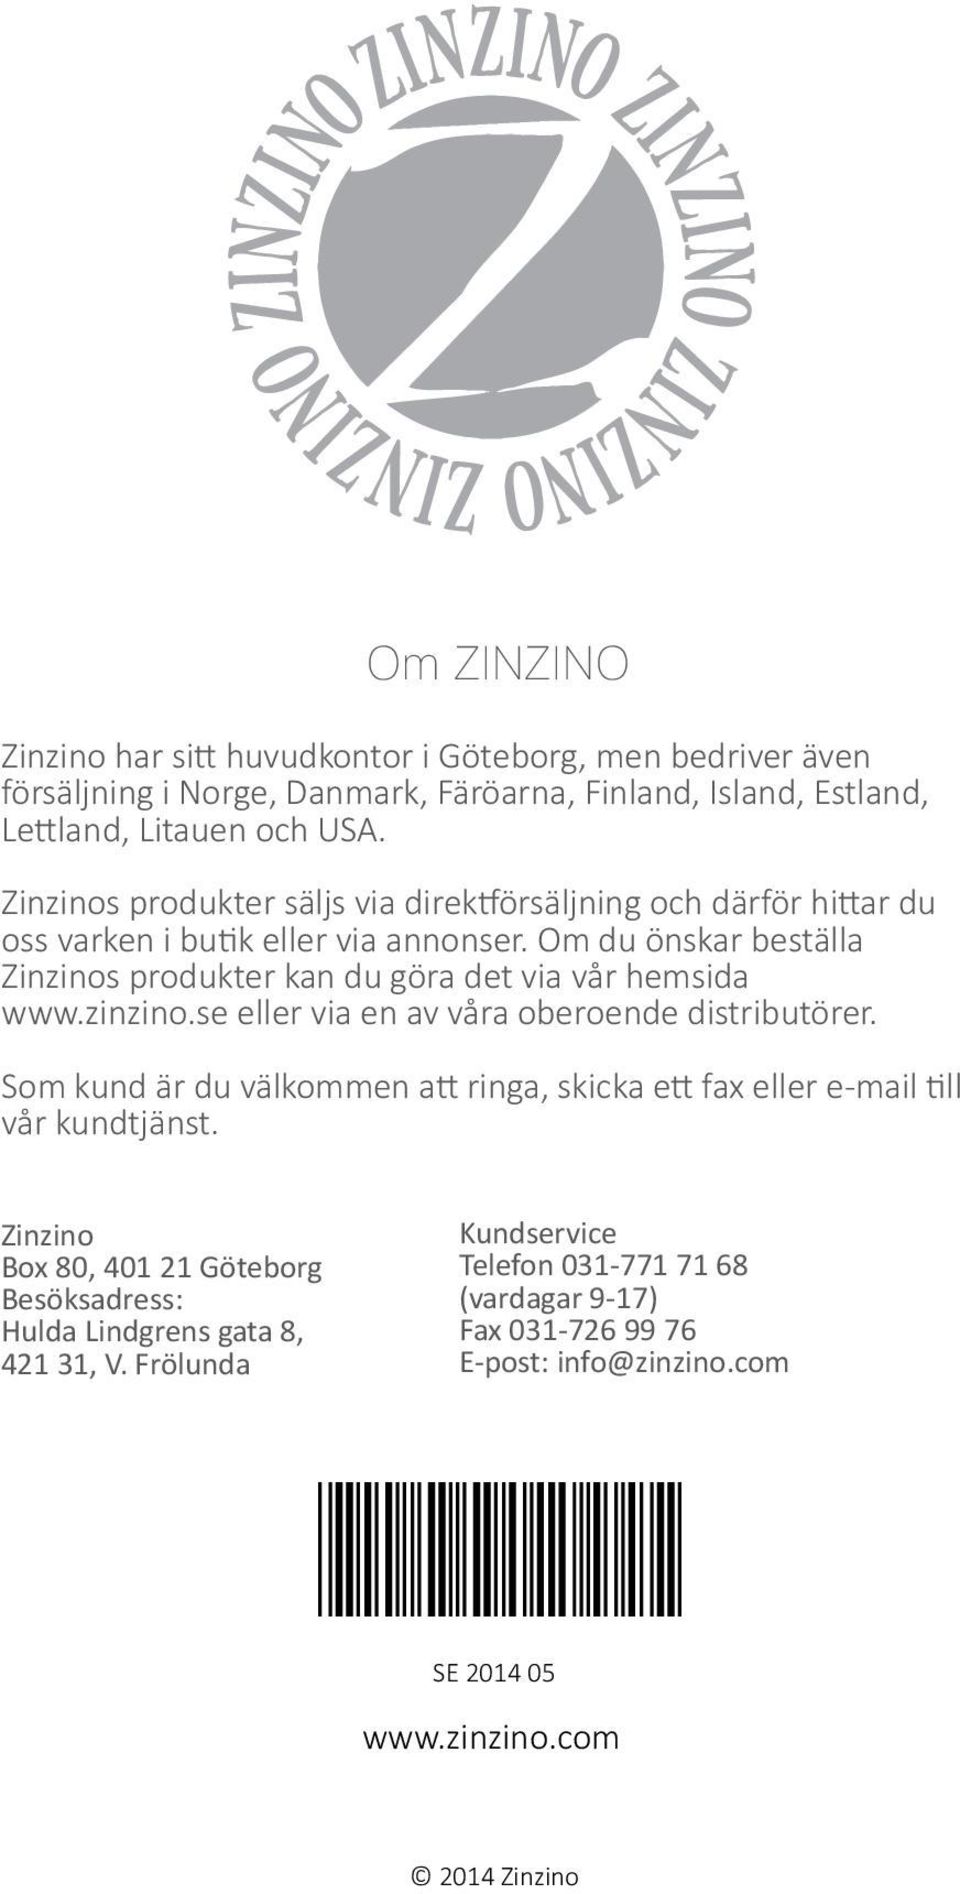 Om du önskar beställa Zinzinos produkter kan du göra det via vår hemsida www.zinzino.se eller via en av våra oberoende distributörer.